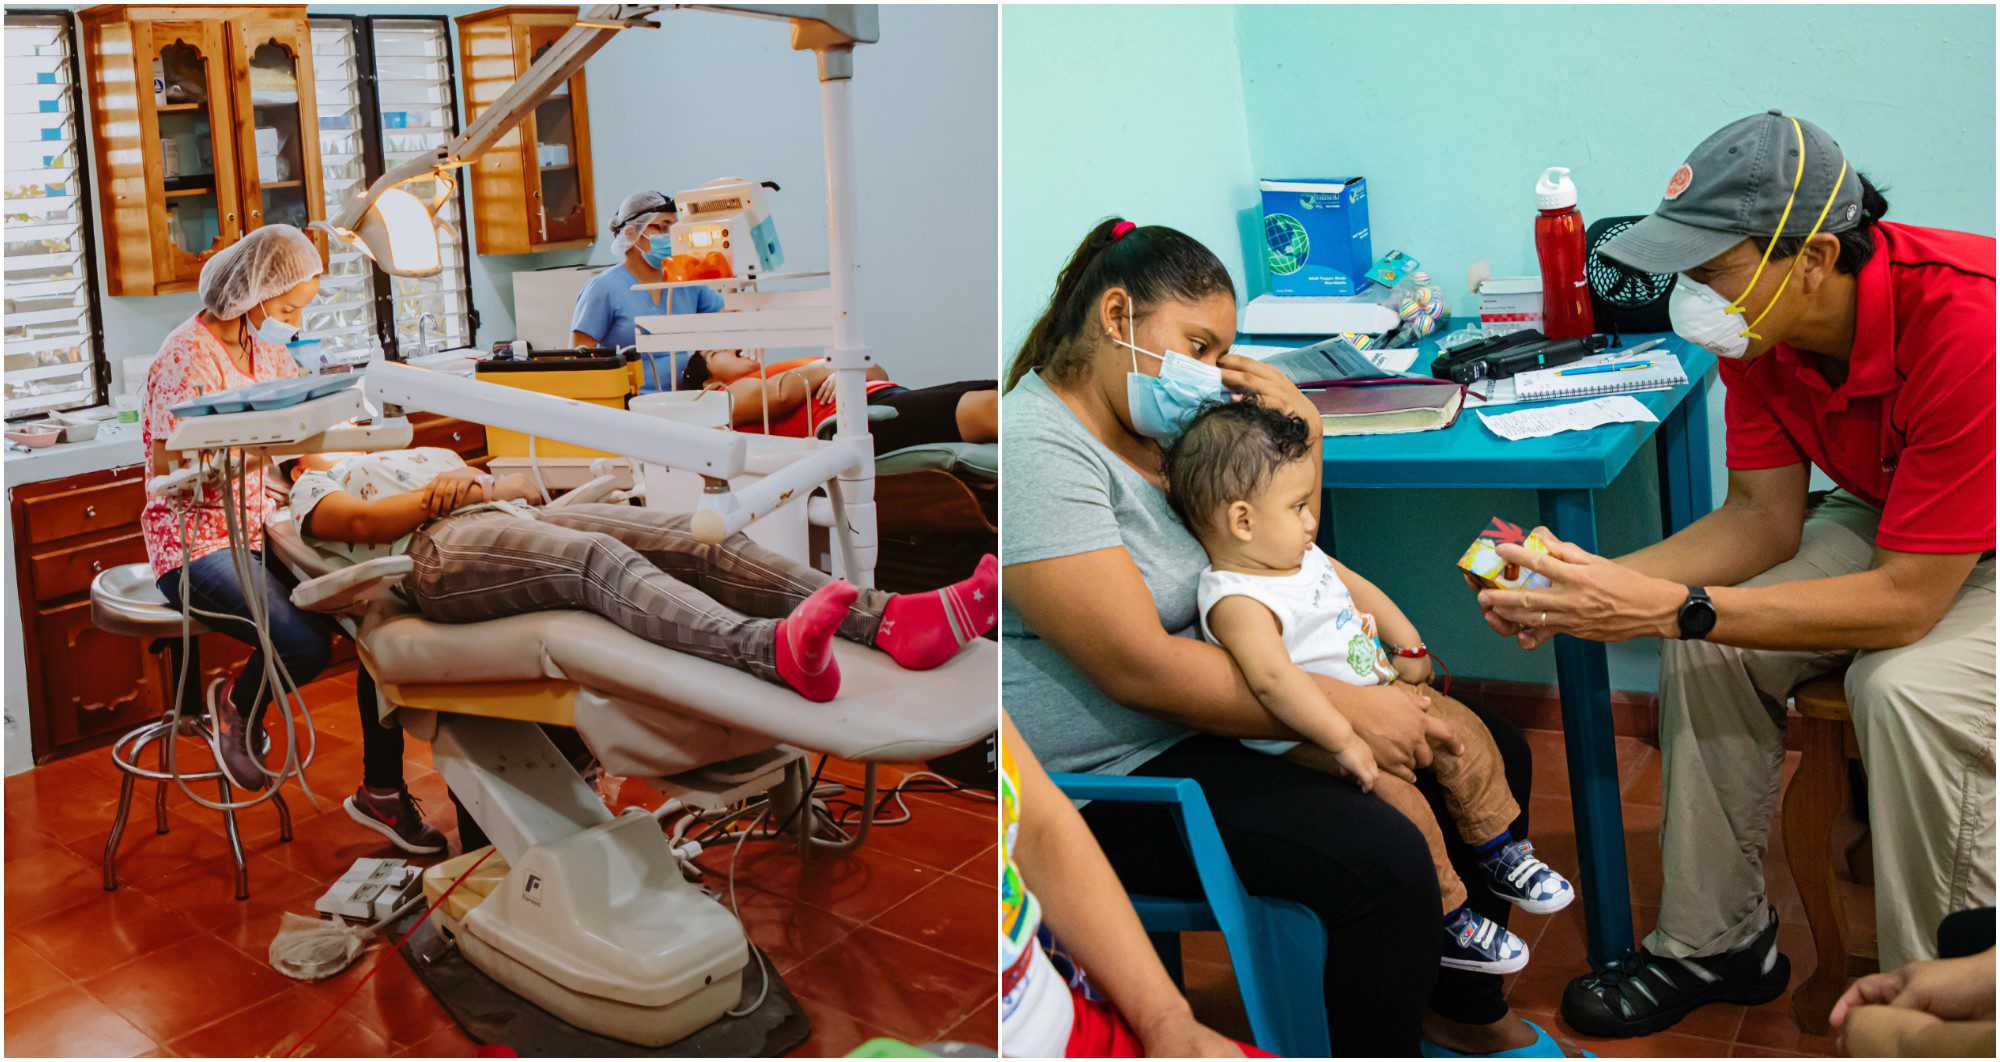 Clínica Houston Hombro a Hombro busca mejorar la salud en Honduras